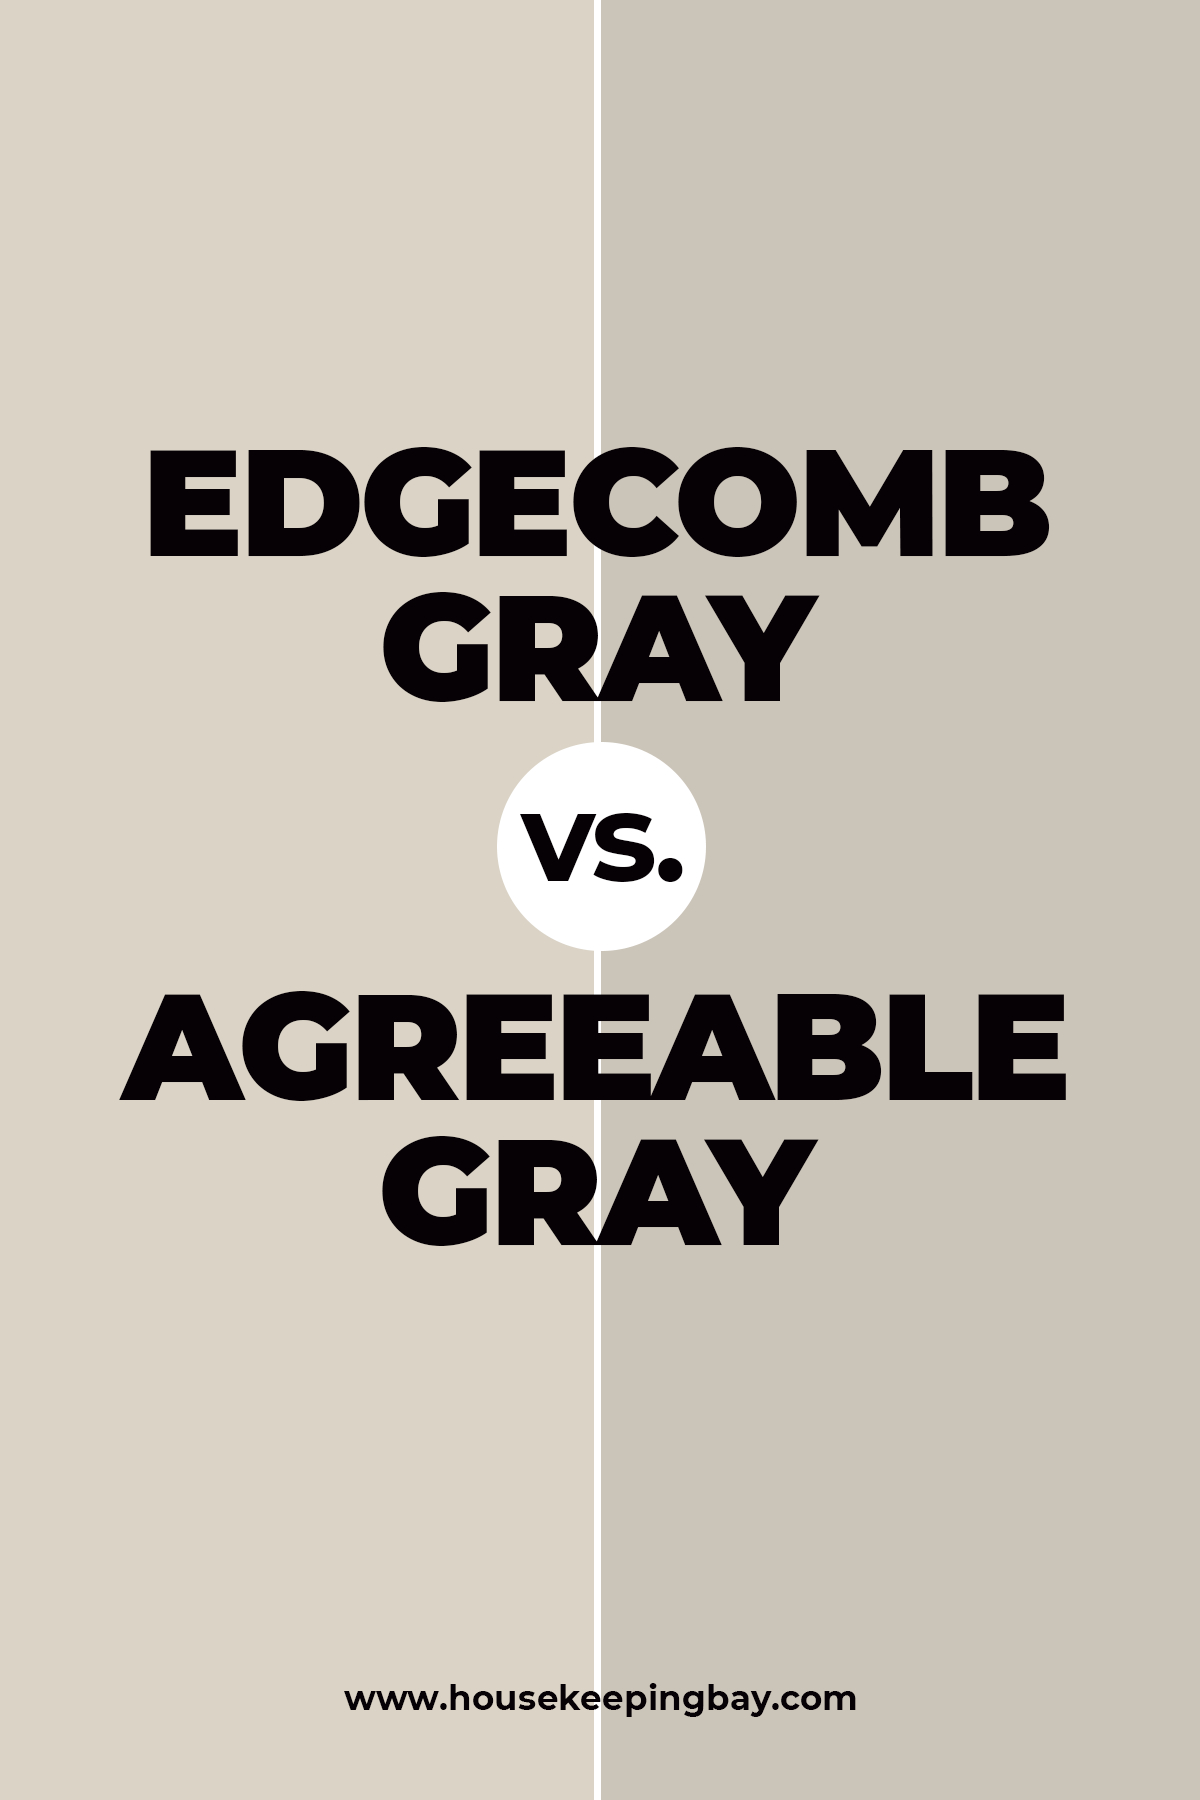 Edgecomb gray vs. Agreeable Gray